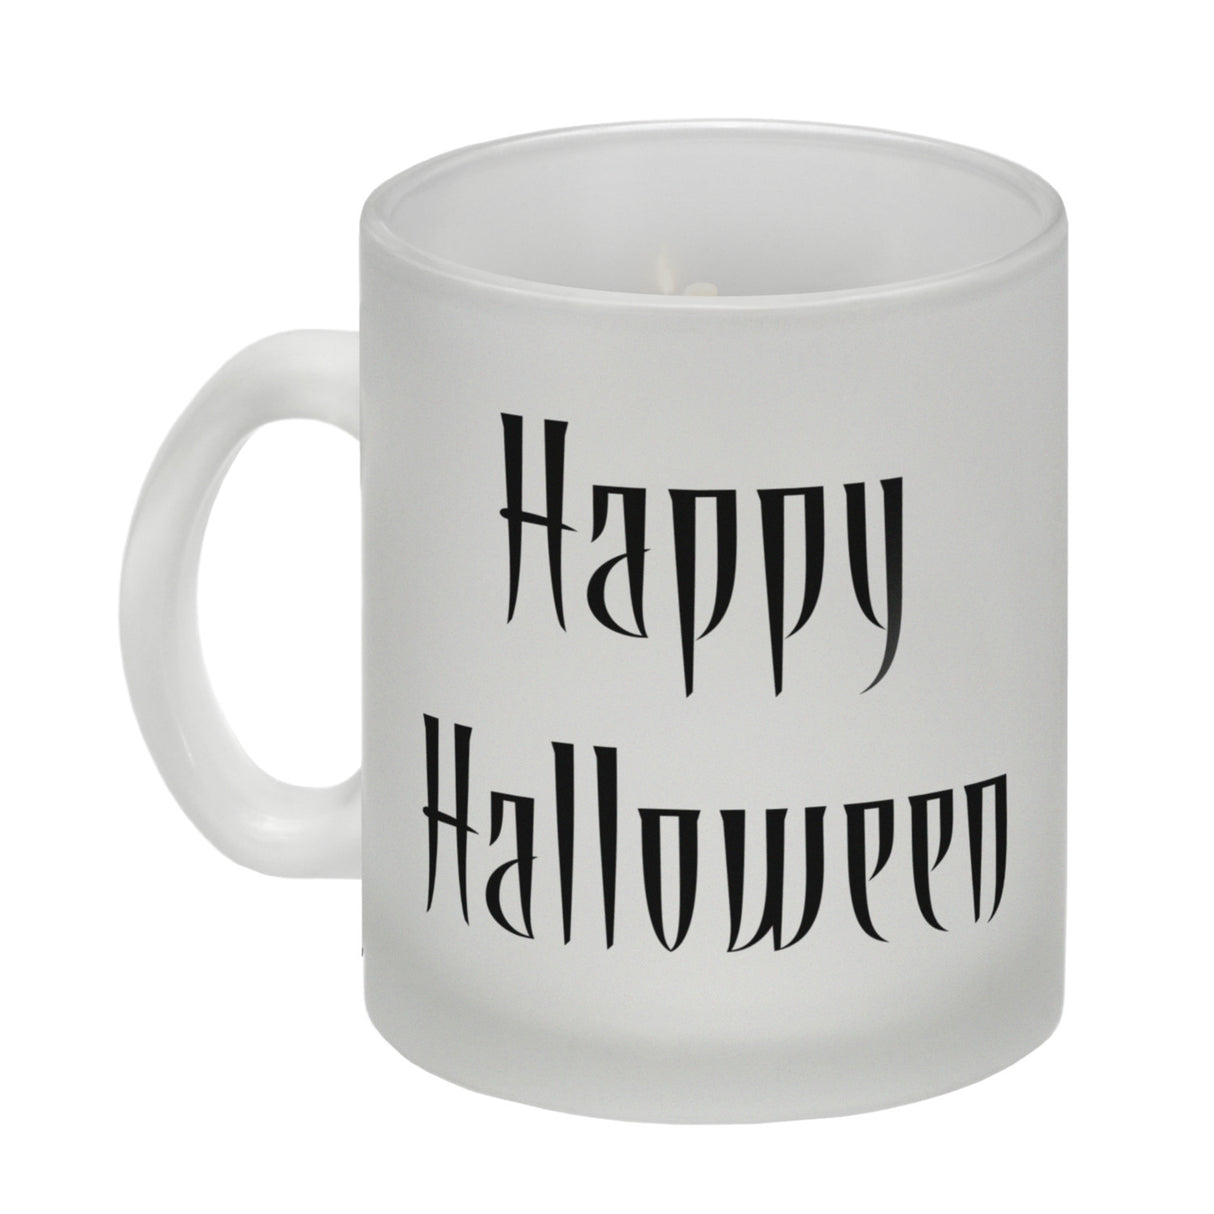 Kaffeetasse mit Totenköpfen und brennenden Kerzen - Happy Halloween